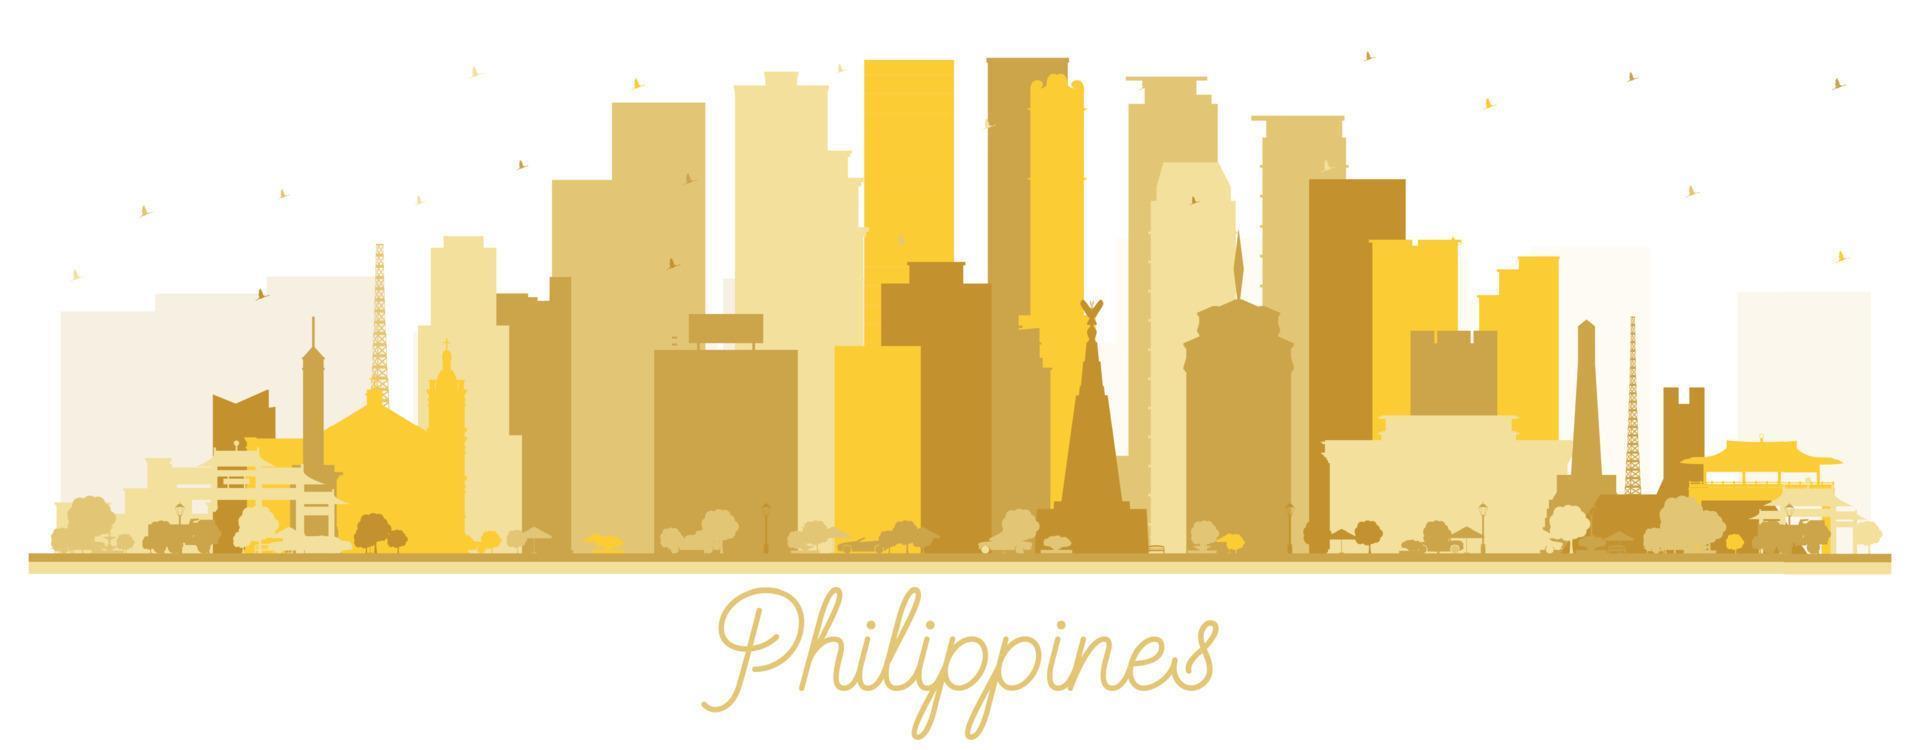 silhouette d'horizon de la ville des philippines avec des bâtiments dorés isolés sur blanc. vecteur